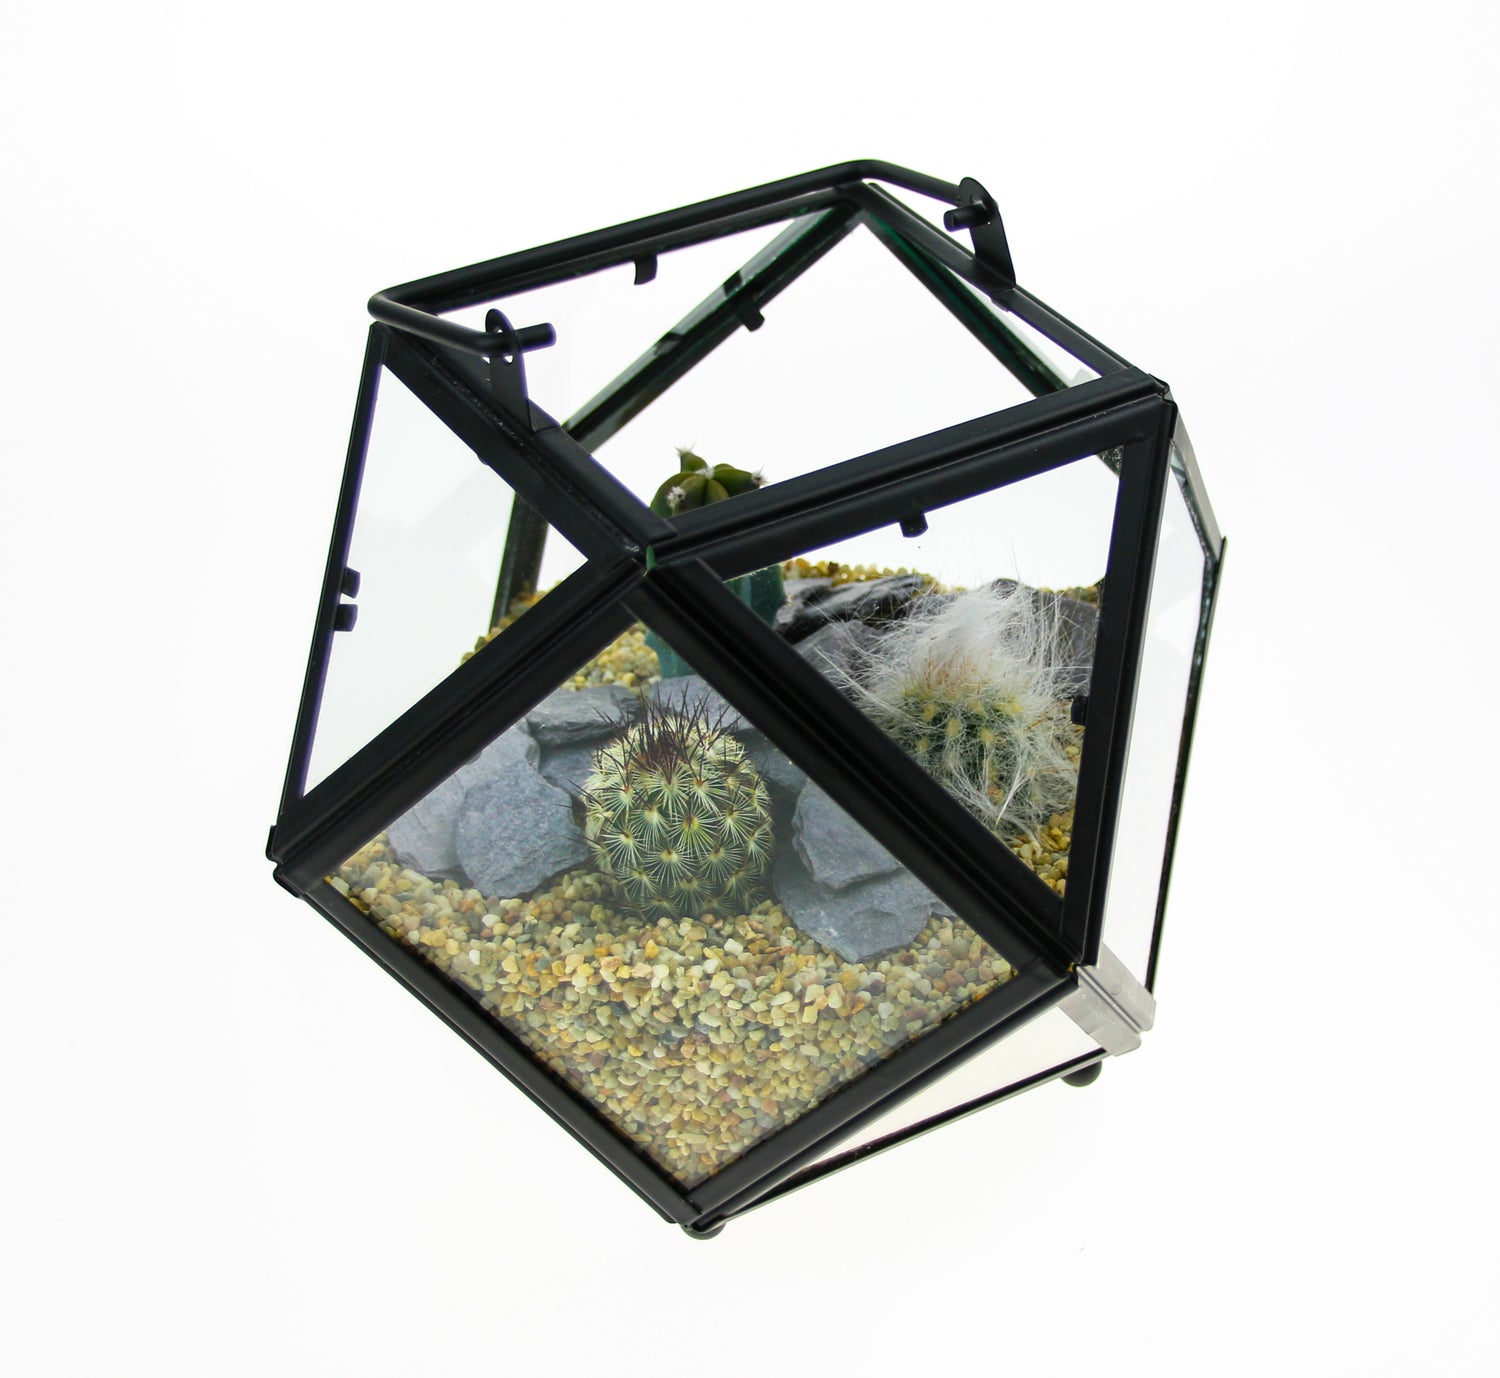 Cactus Terrarium with plants